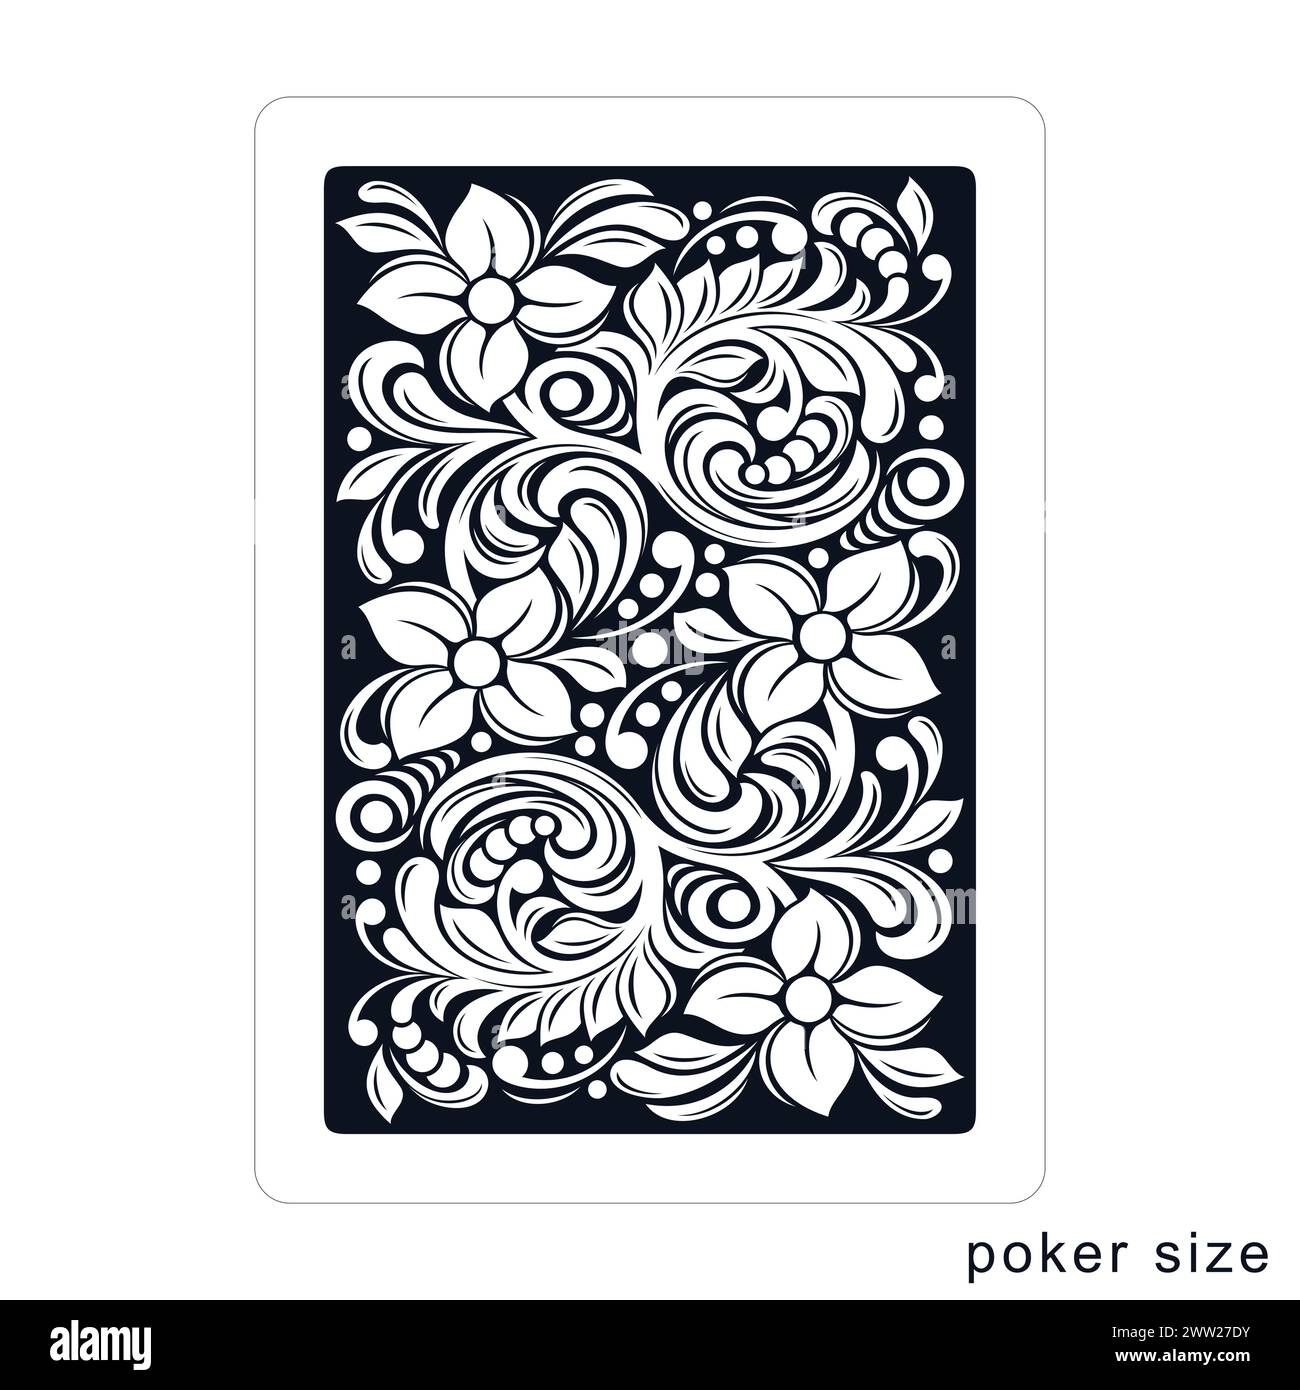 Rückseite einer Spielkarte. Pokergröße Stock Vektor